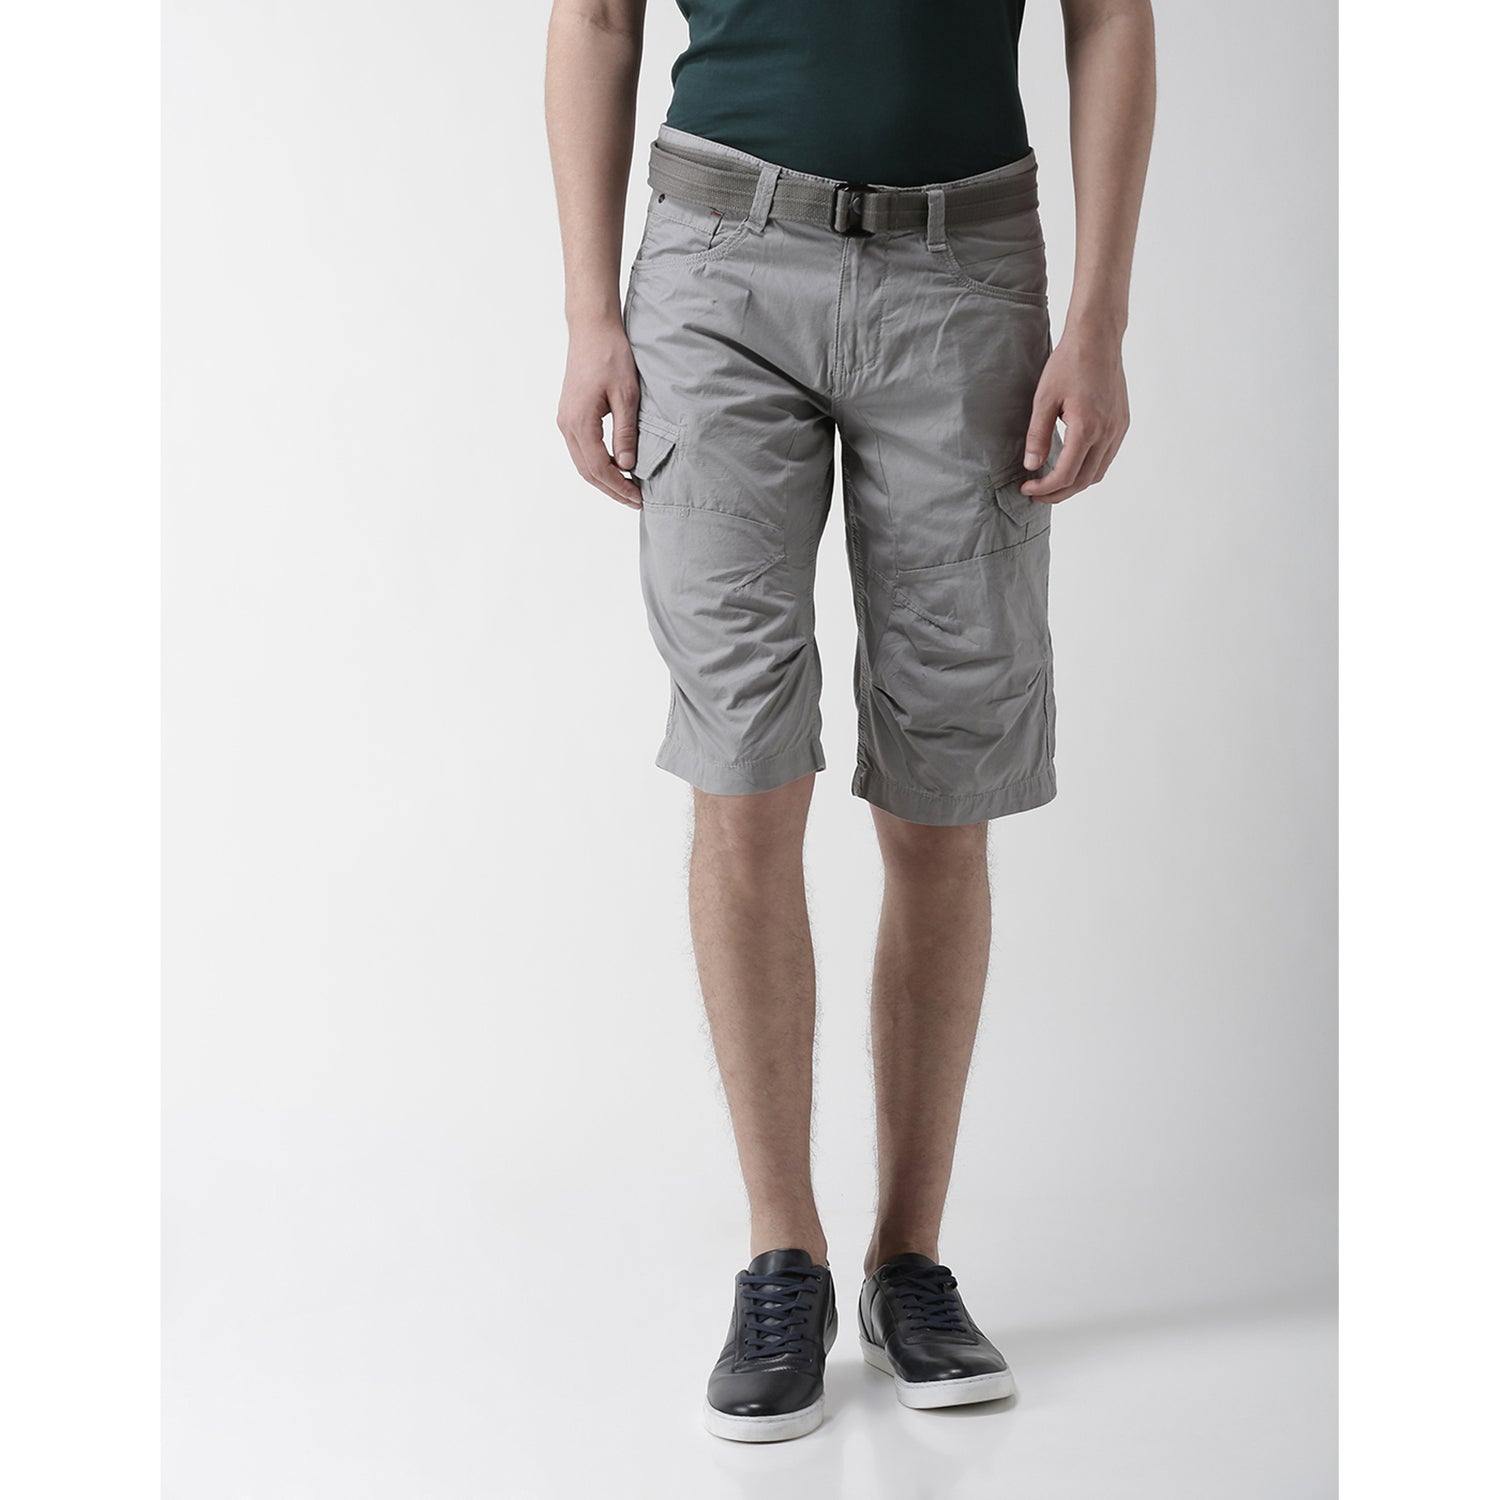 Grey Cargo Shorts (ROCOURTE)